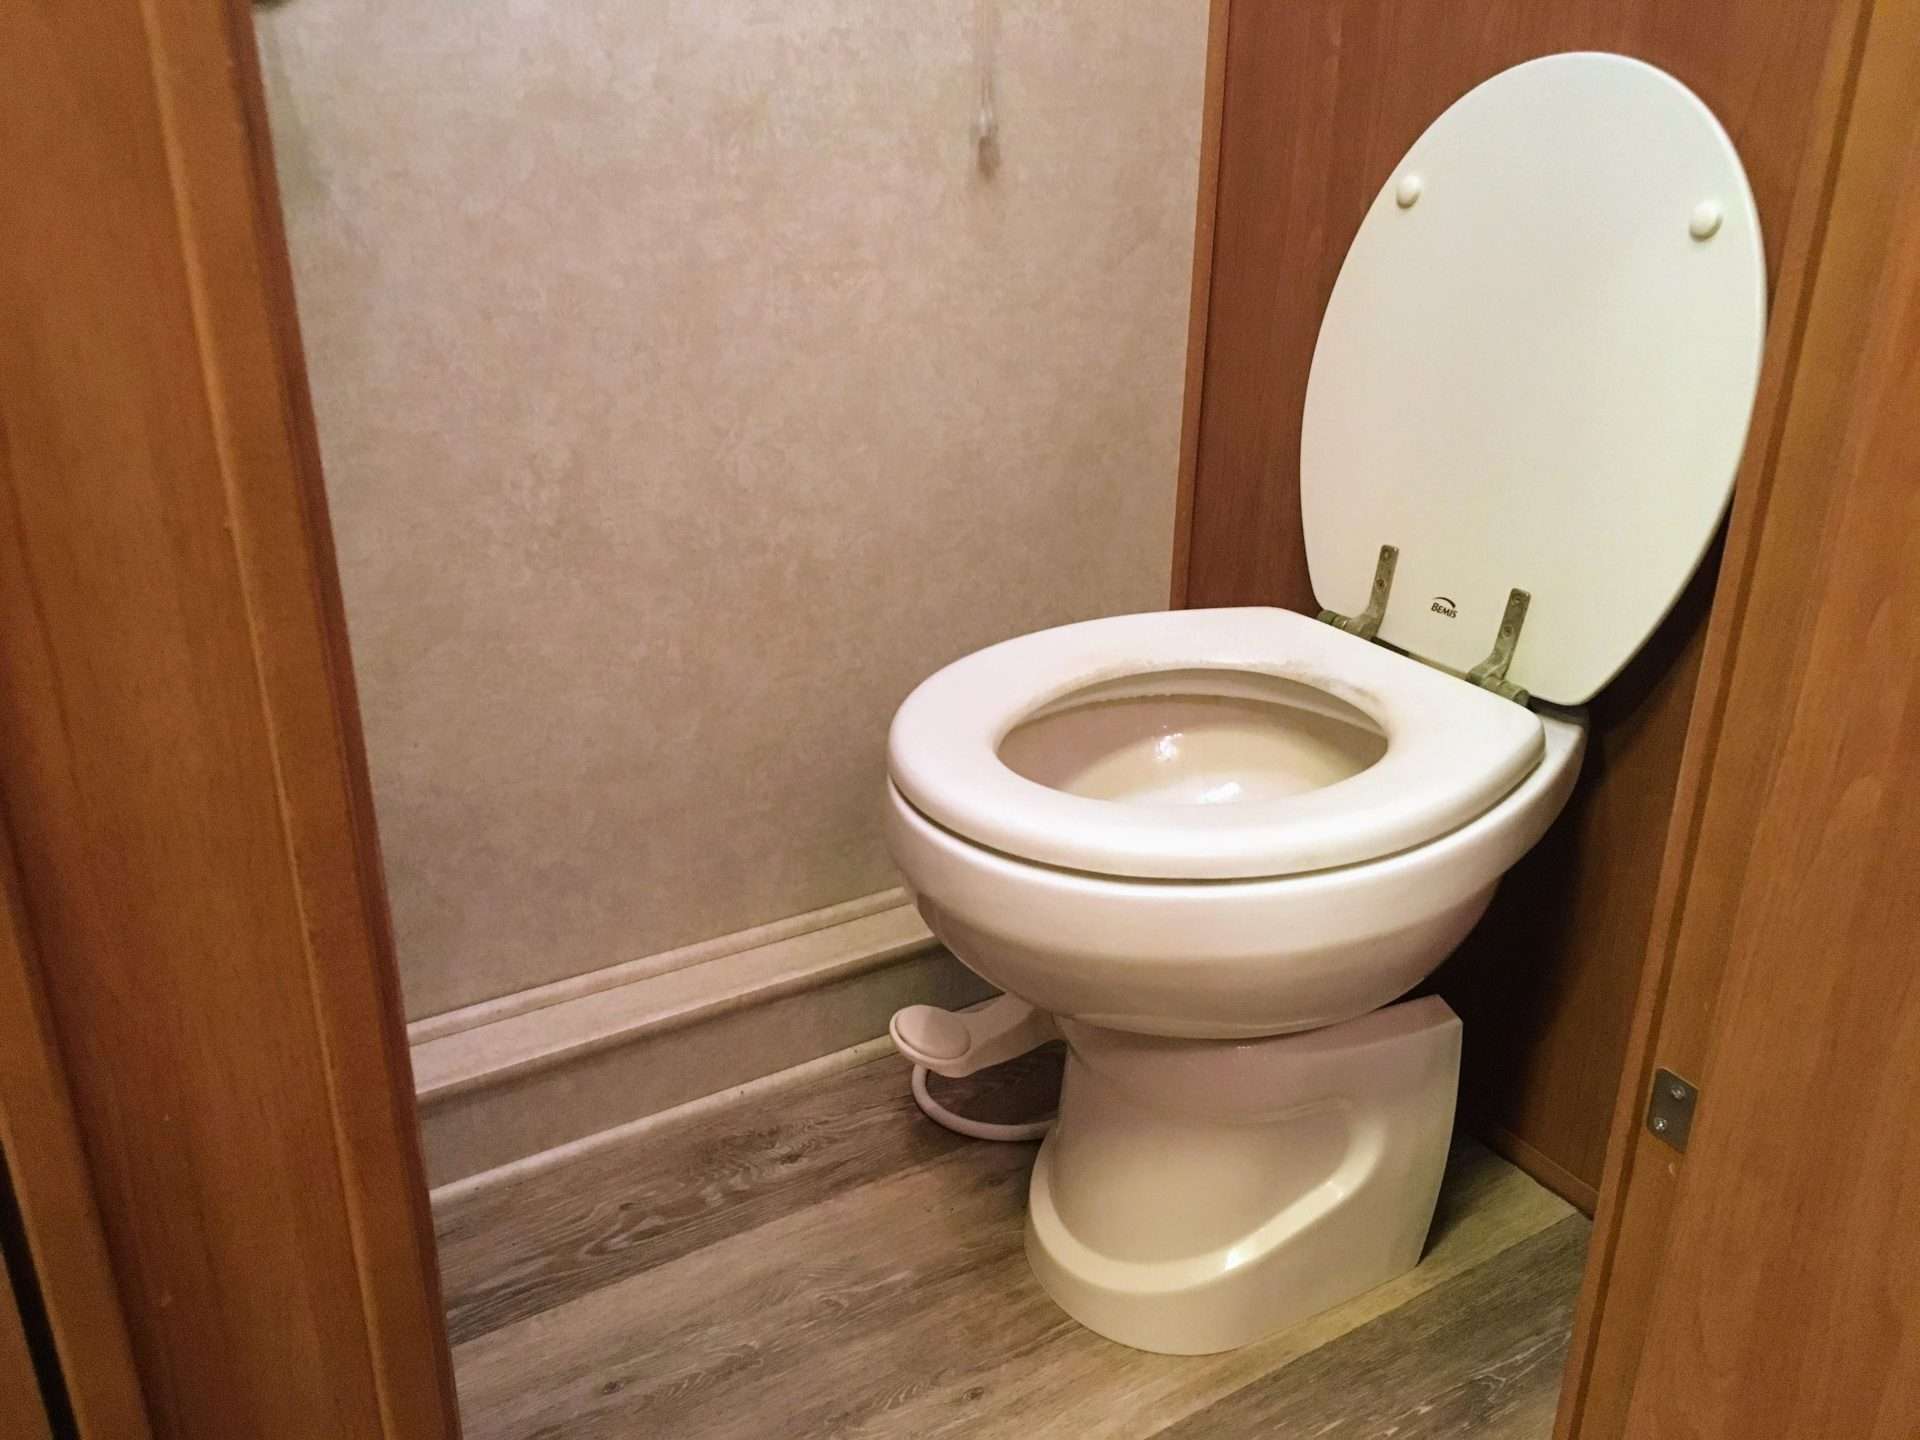 Toilet inside RV